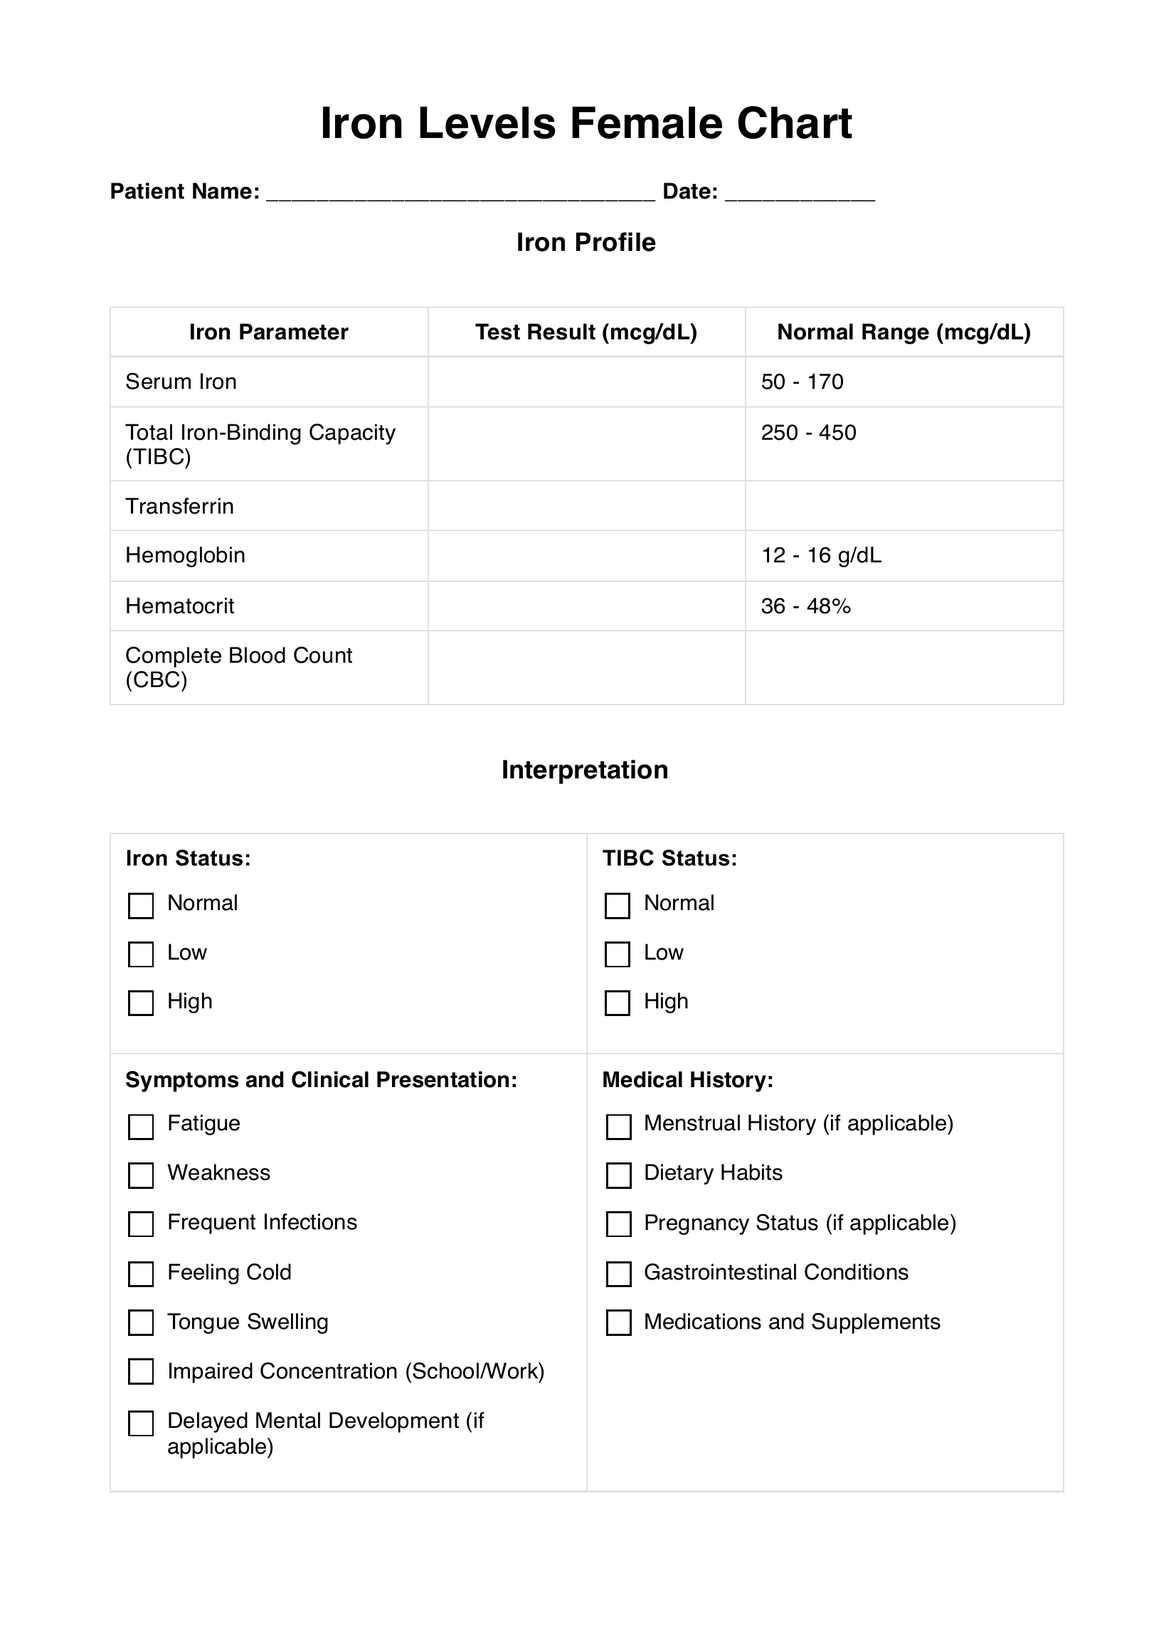 Iron Levels Female PDF Example